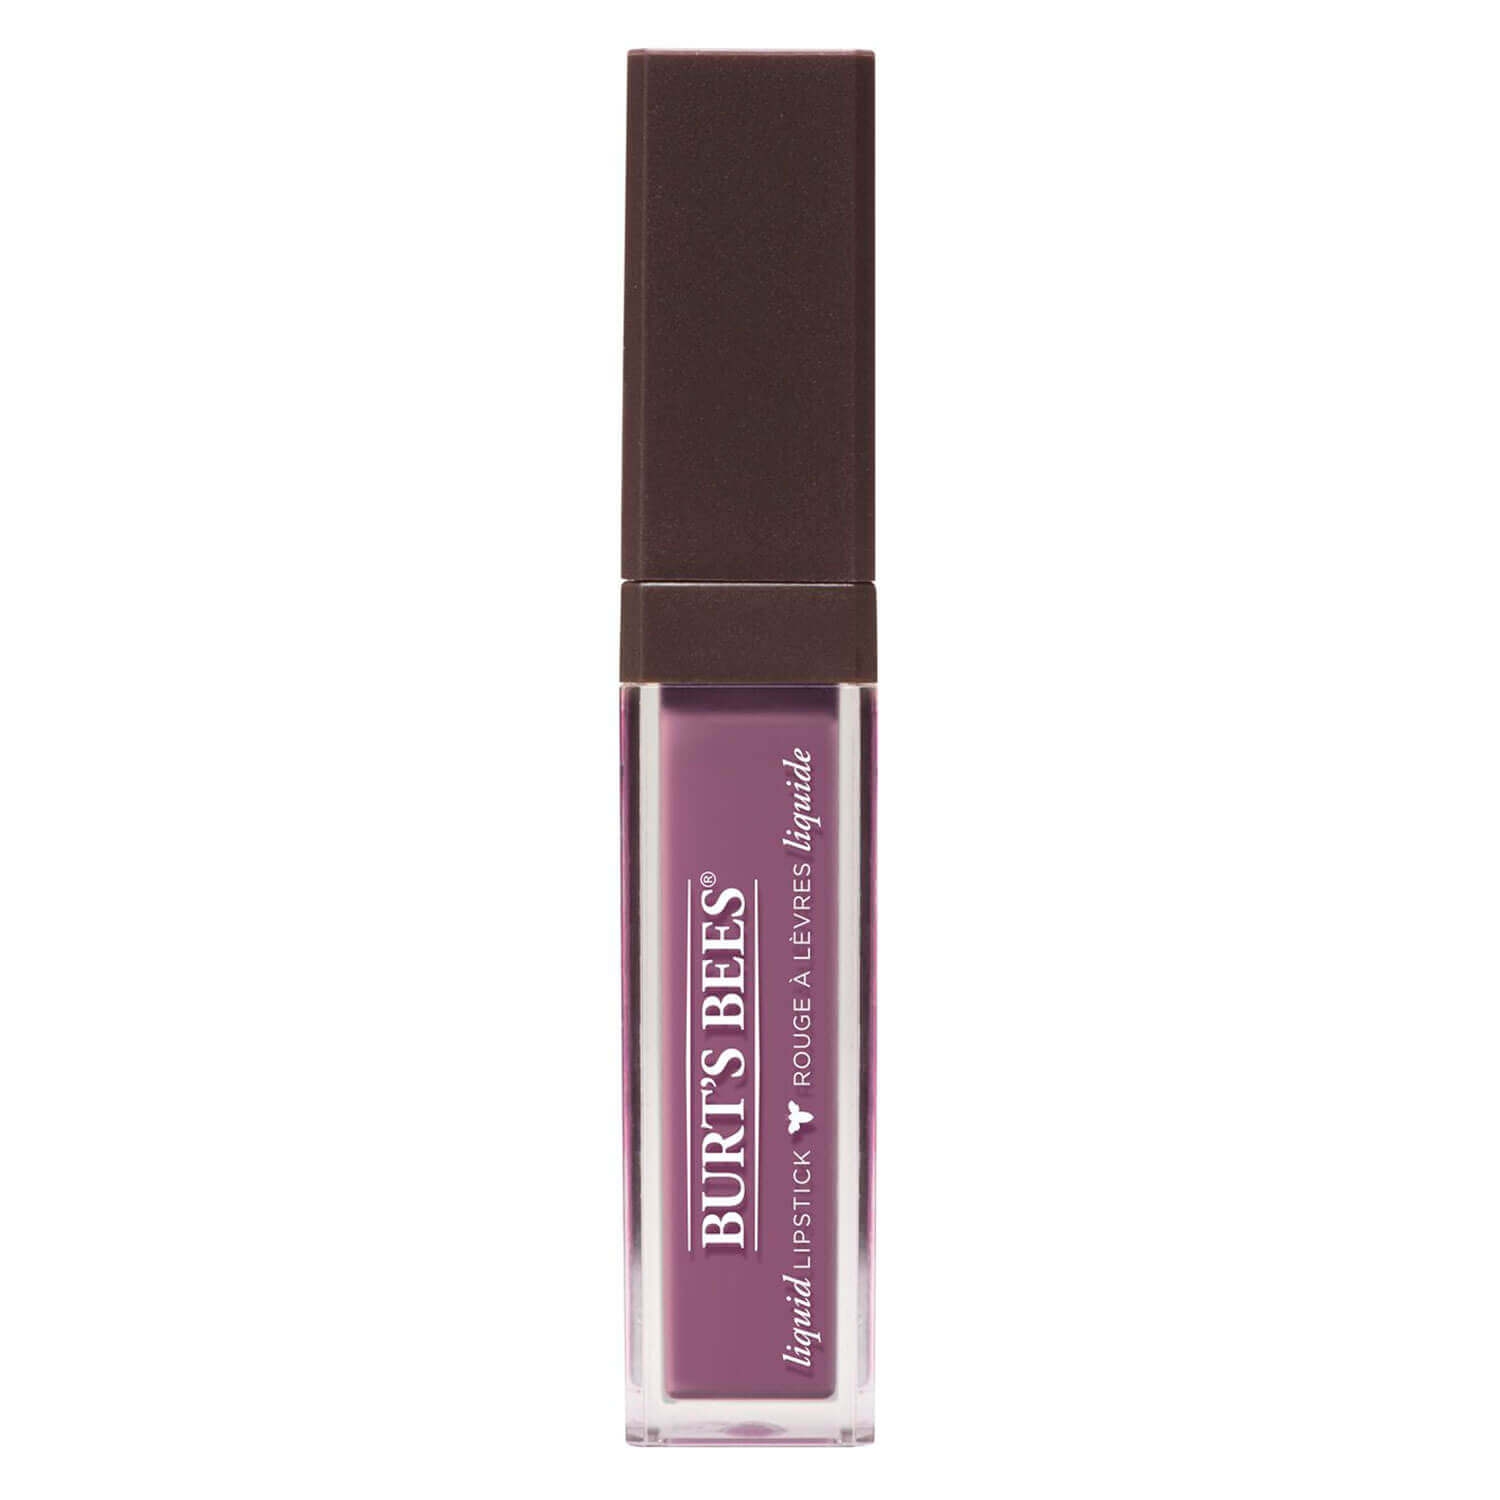 Produktbild von Burt's Bees - Liquid Lipstick Lavender Lake